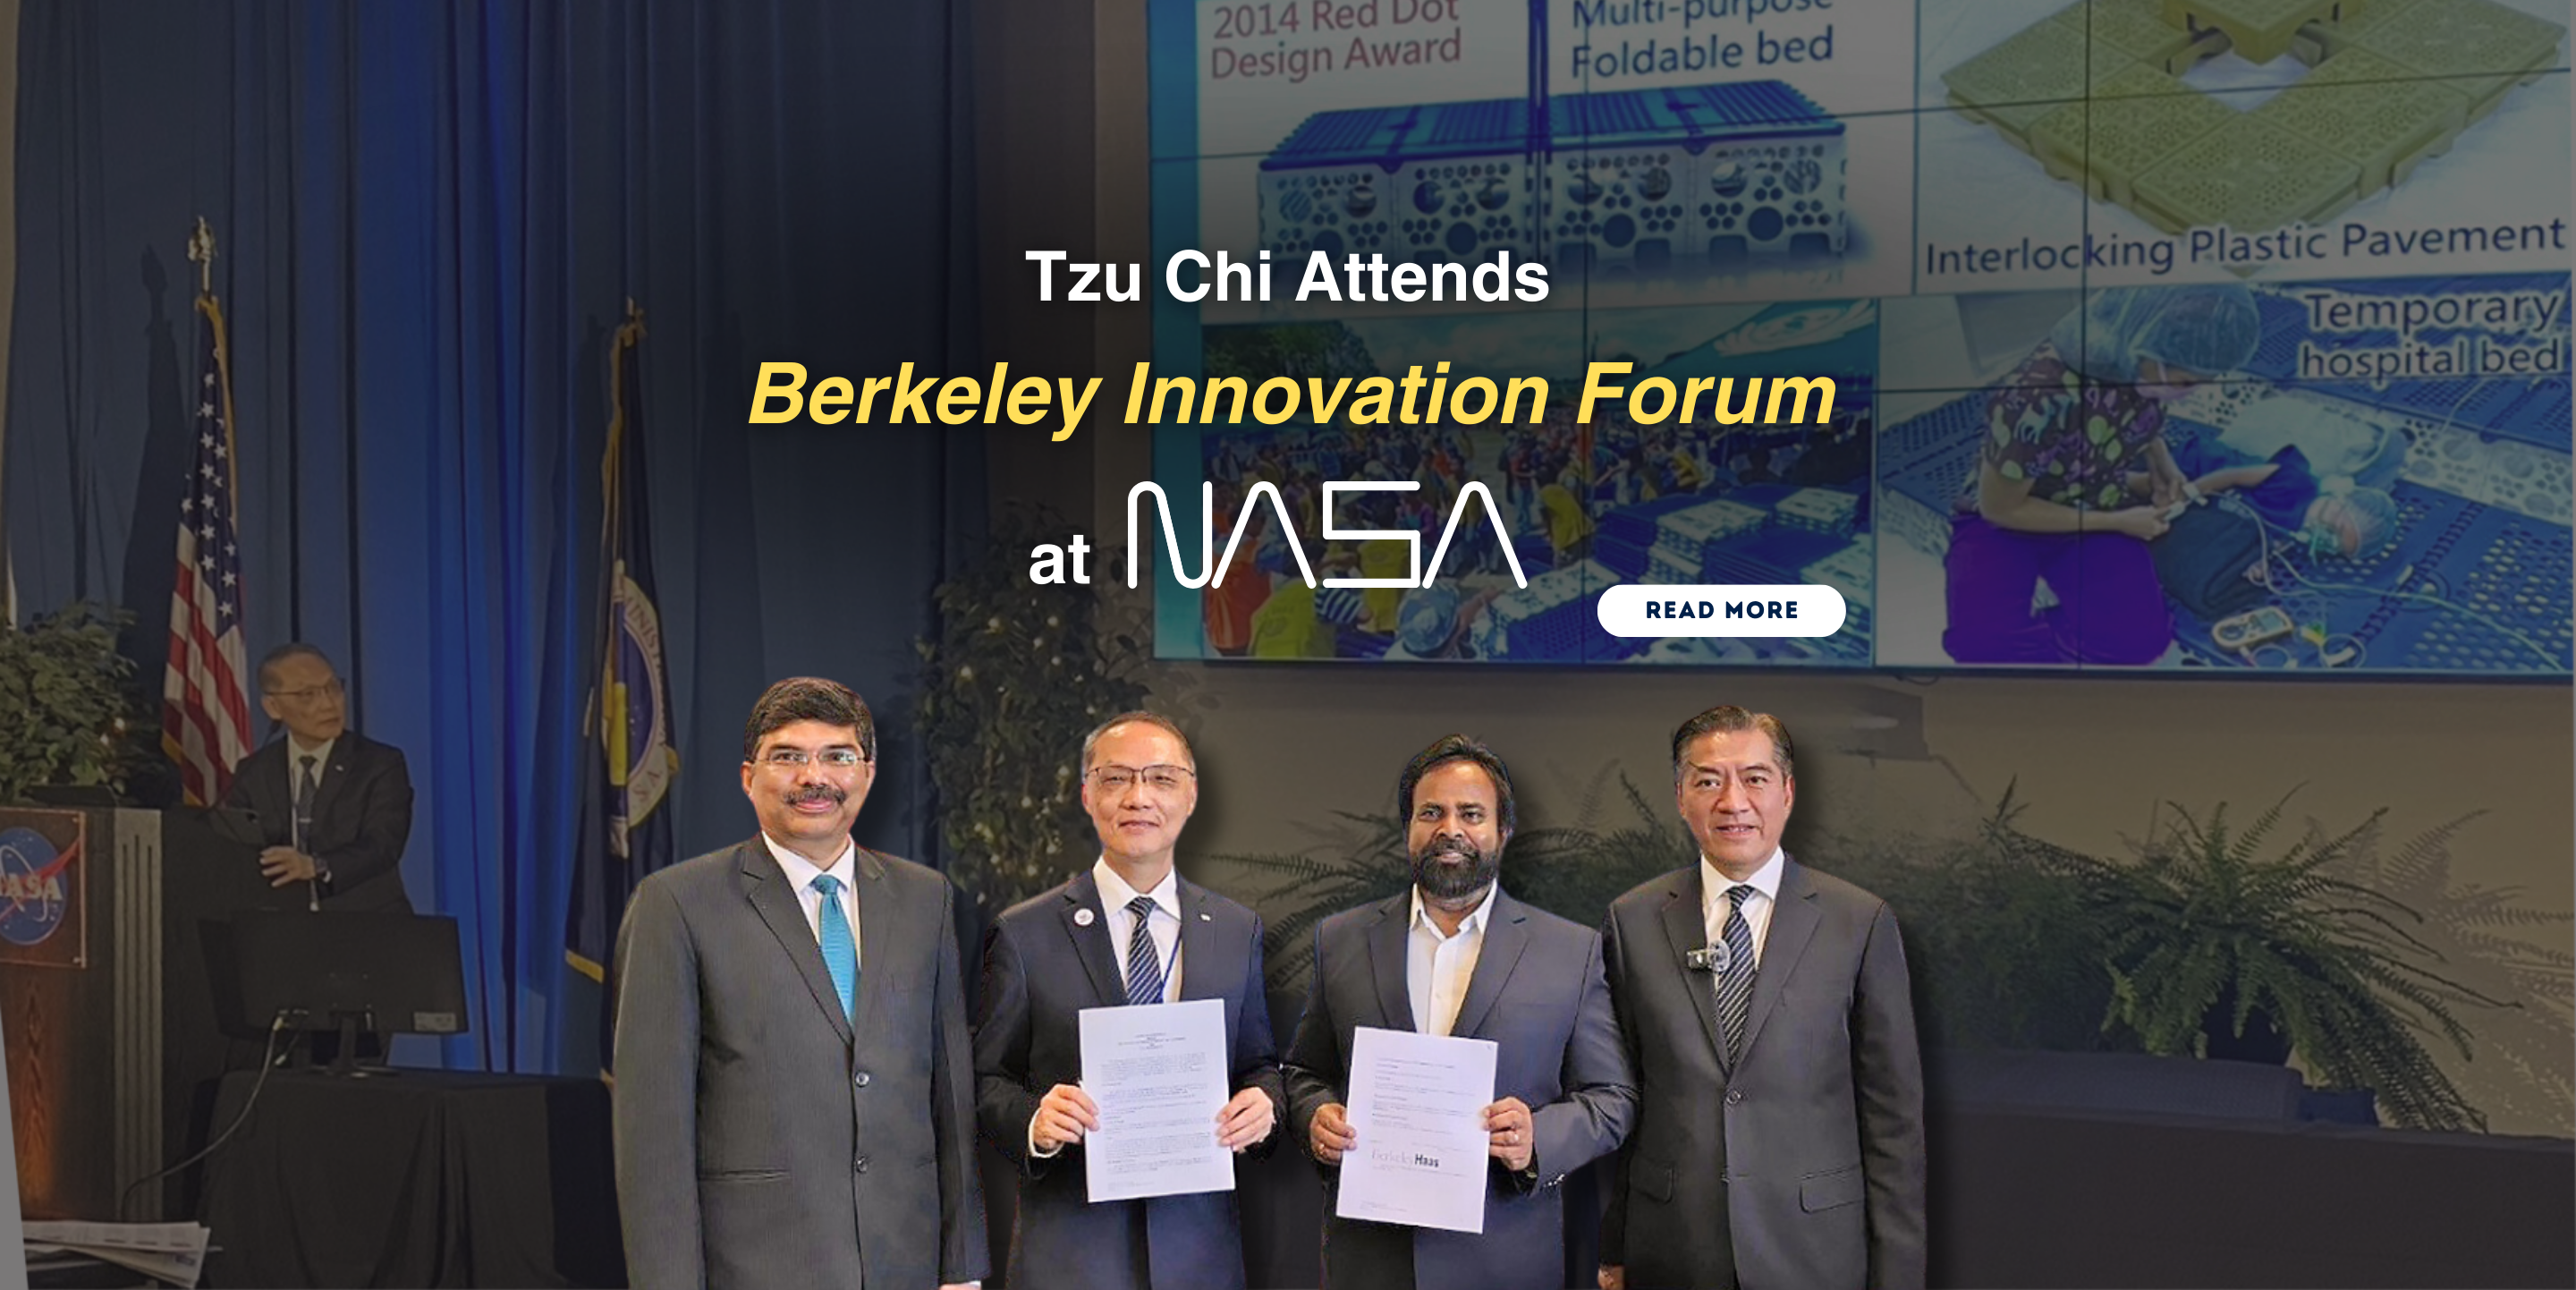 Tzu Chi Attends Berkeley Innovation Forum at NASA